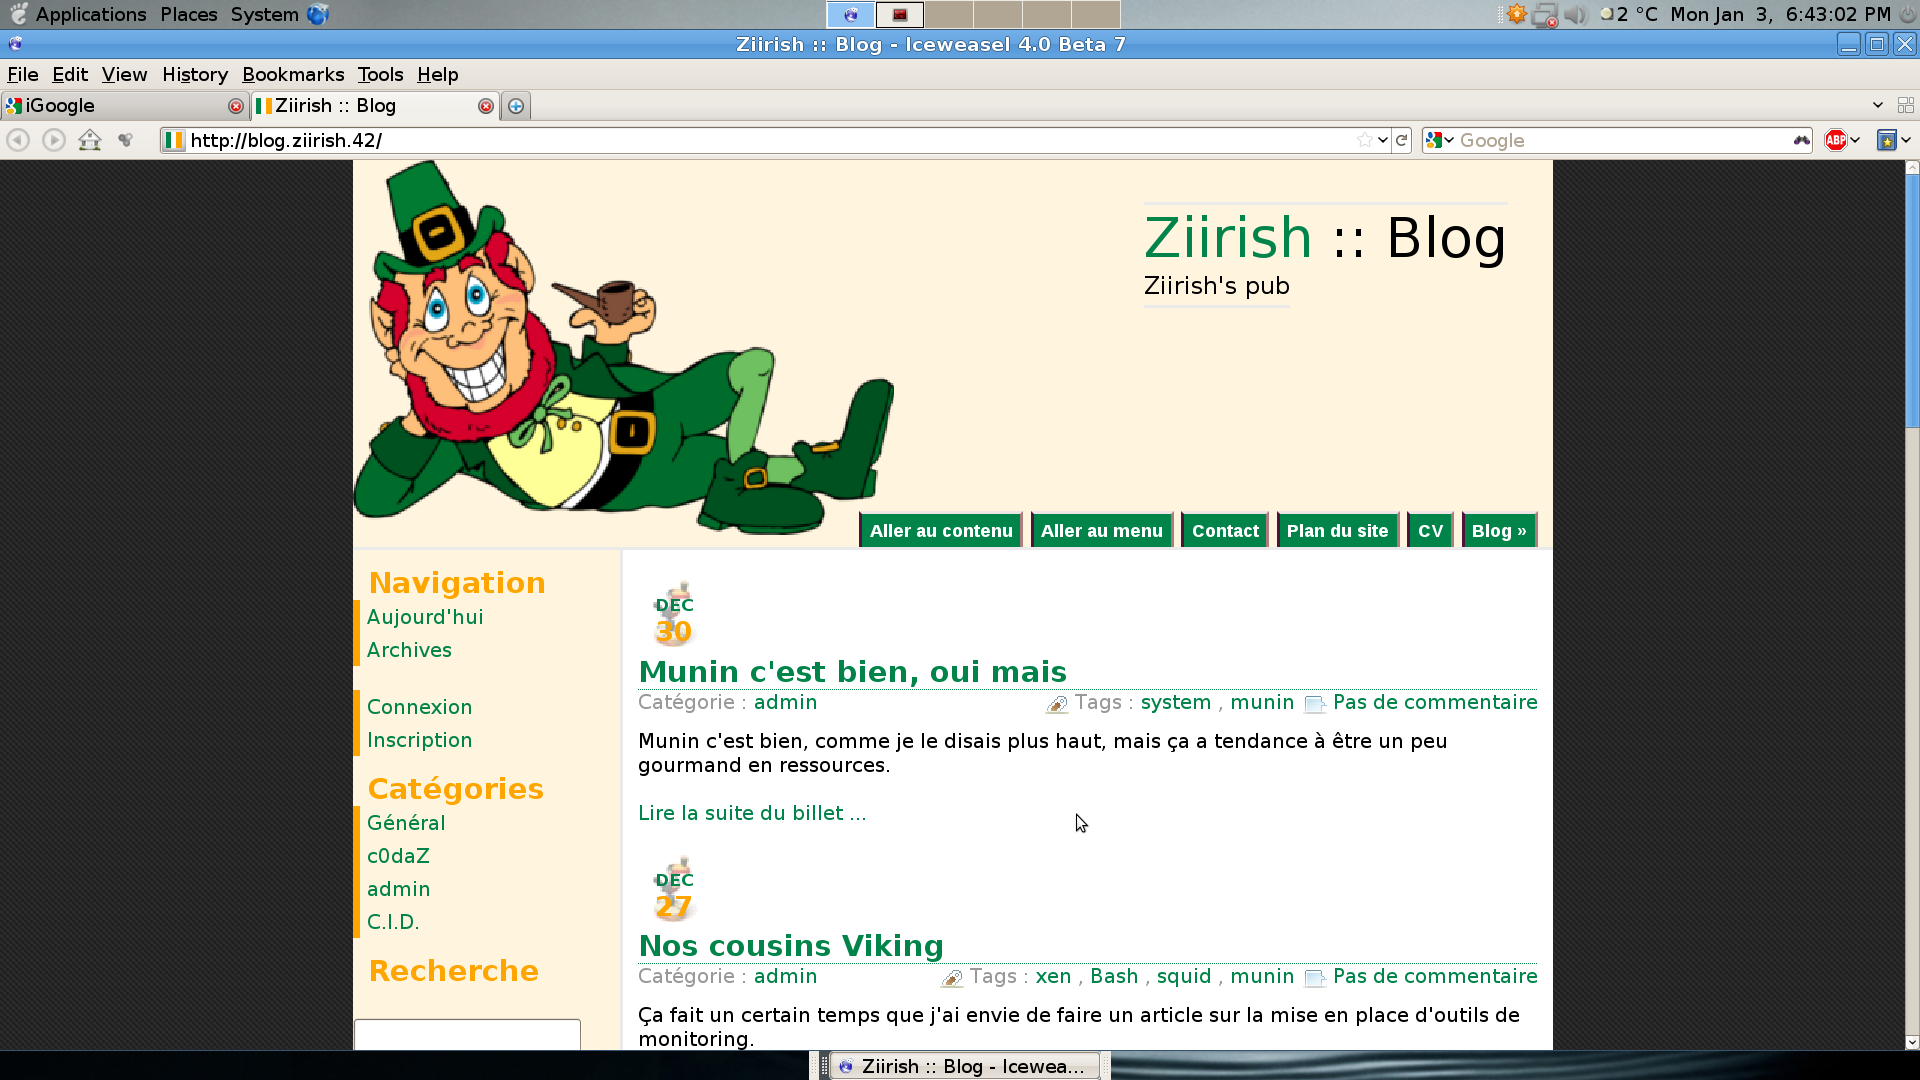 ziirish.info v1.0